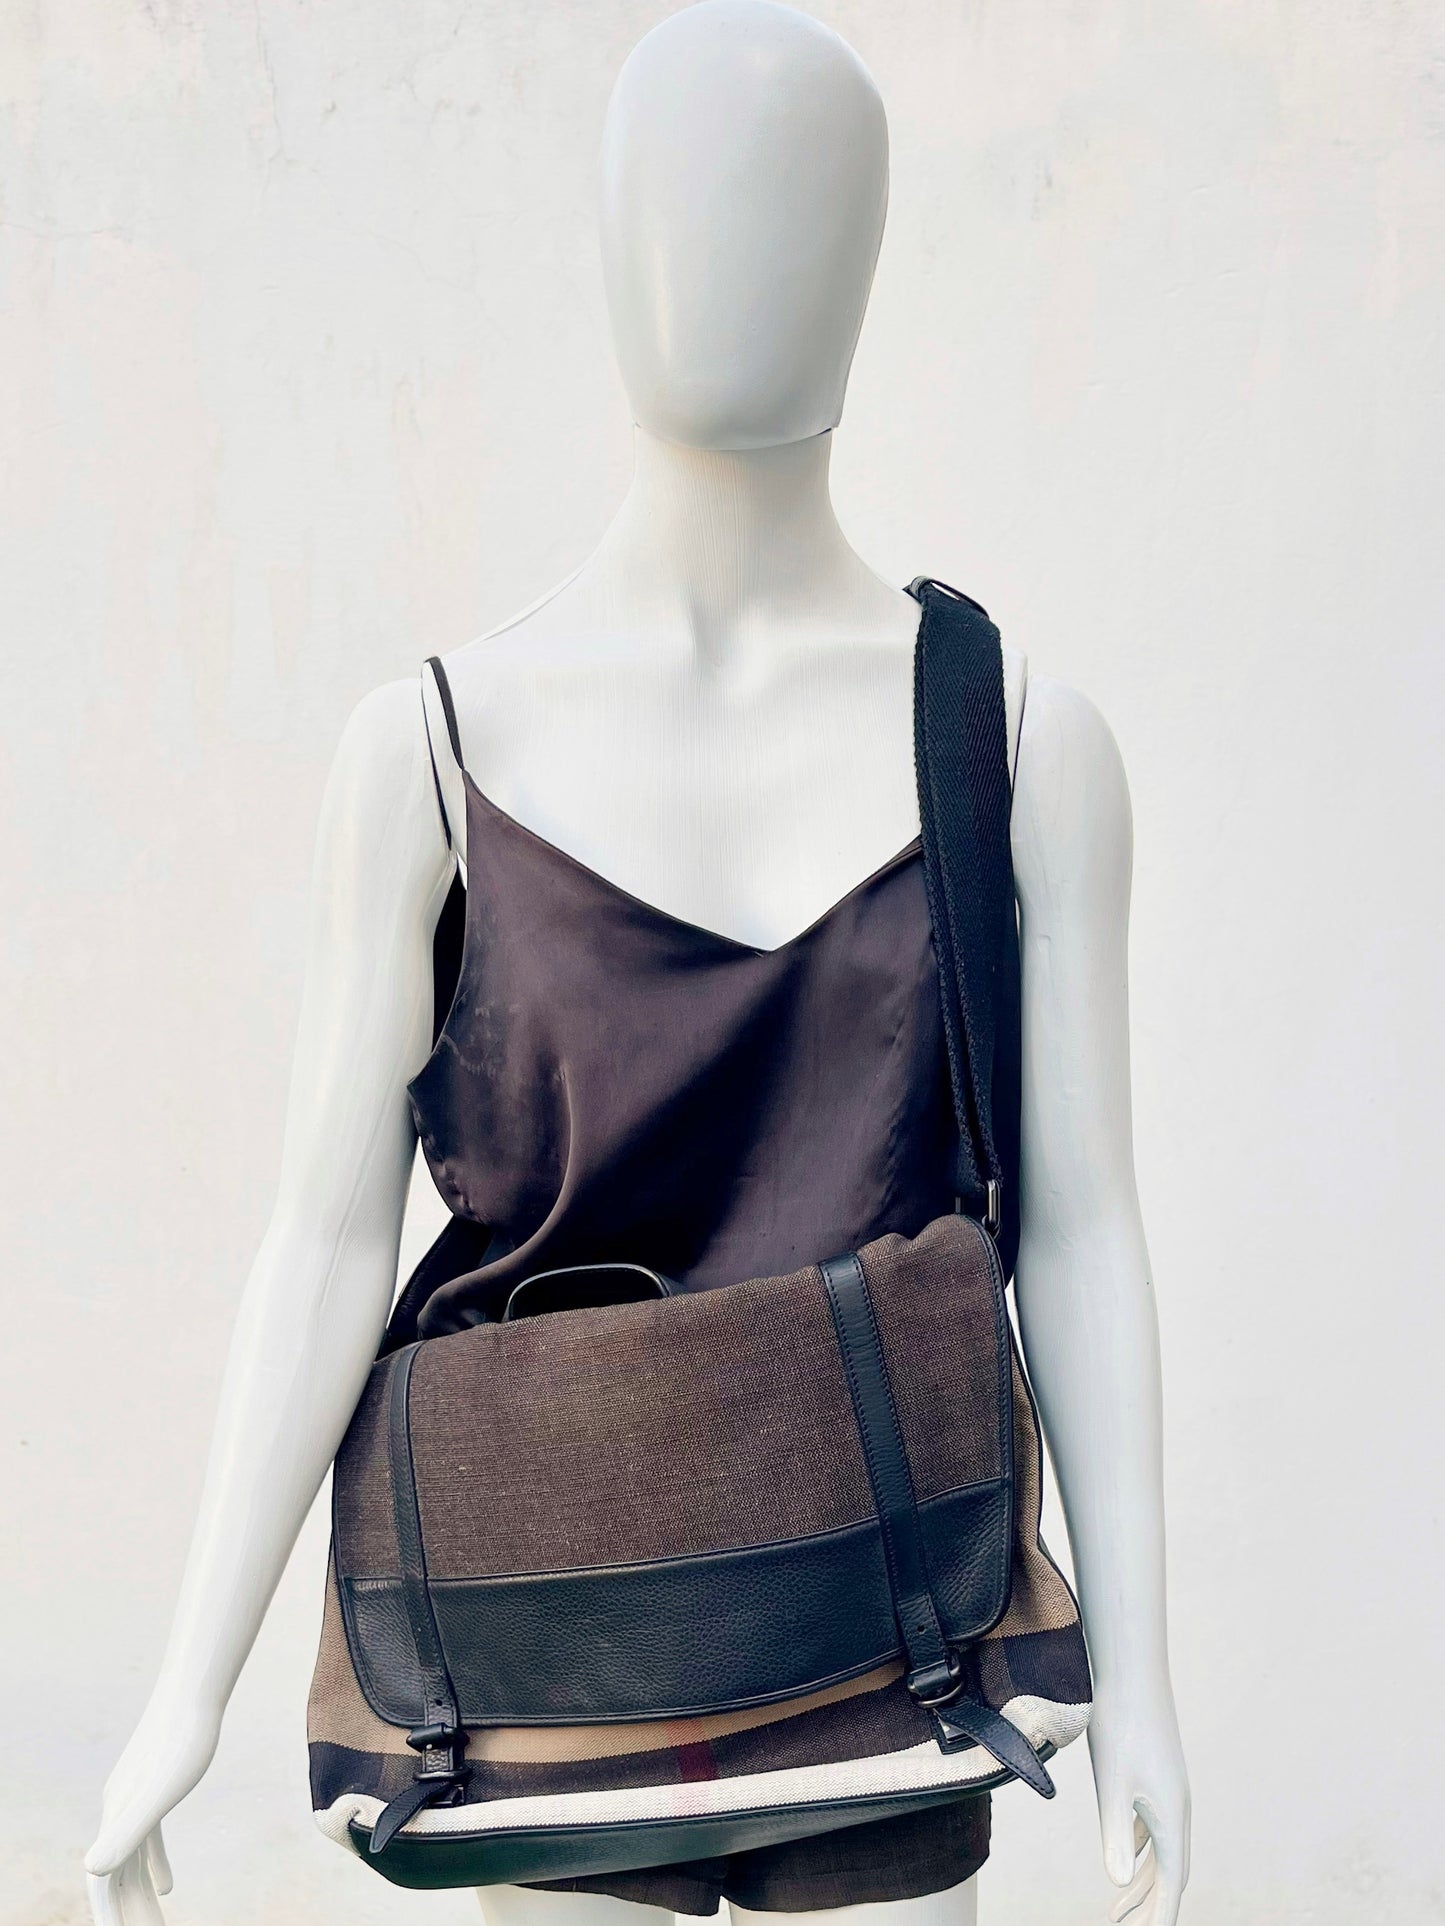 Bandolera Burberry cloth satchel messenger bag